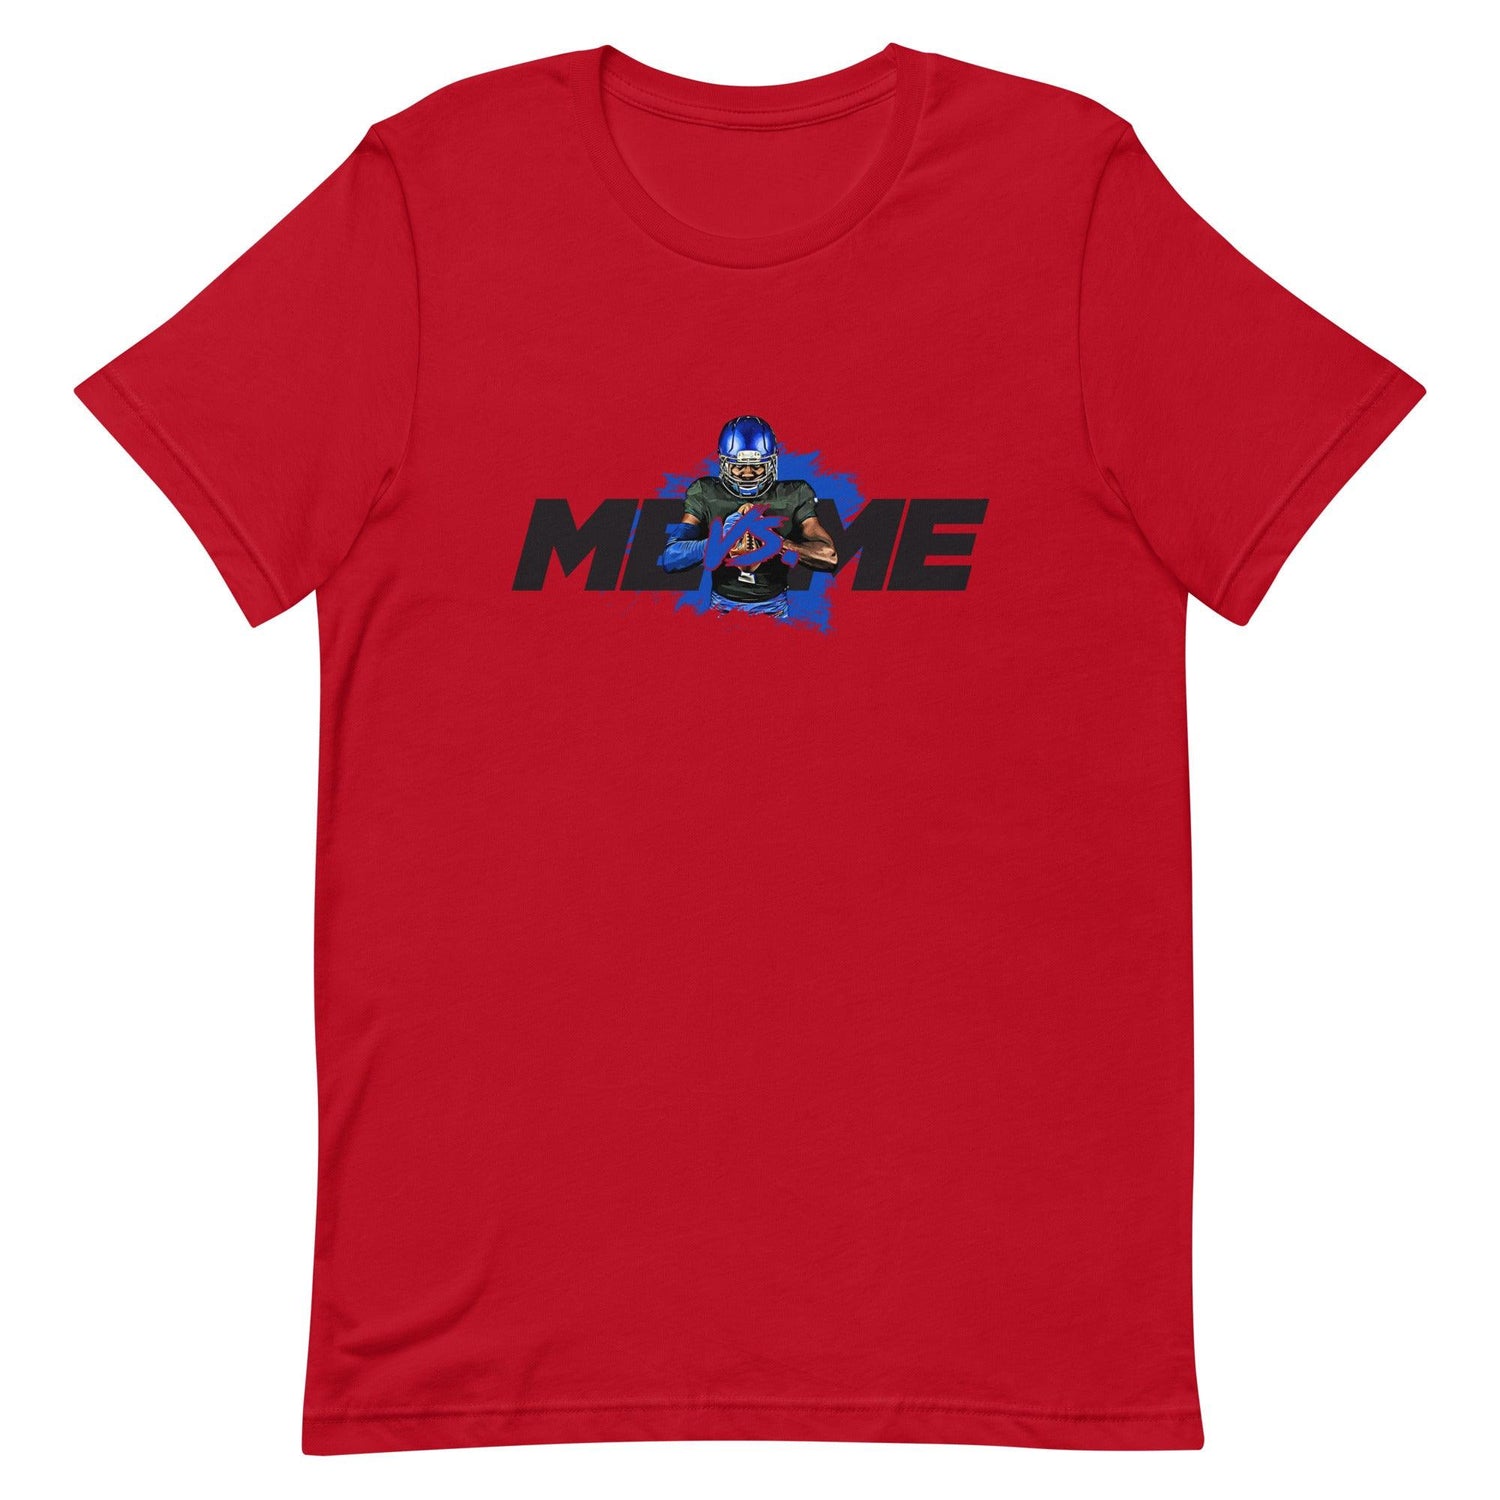 Antoine Holloway II "Me Vs. Me" t-shirt - Fan Arch